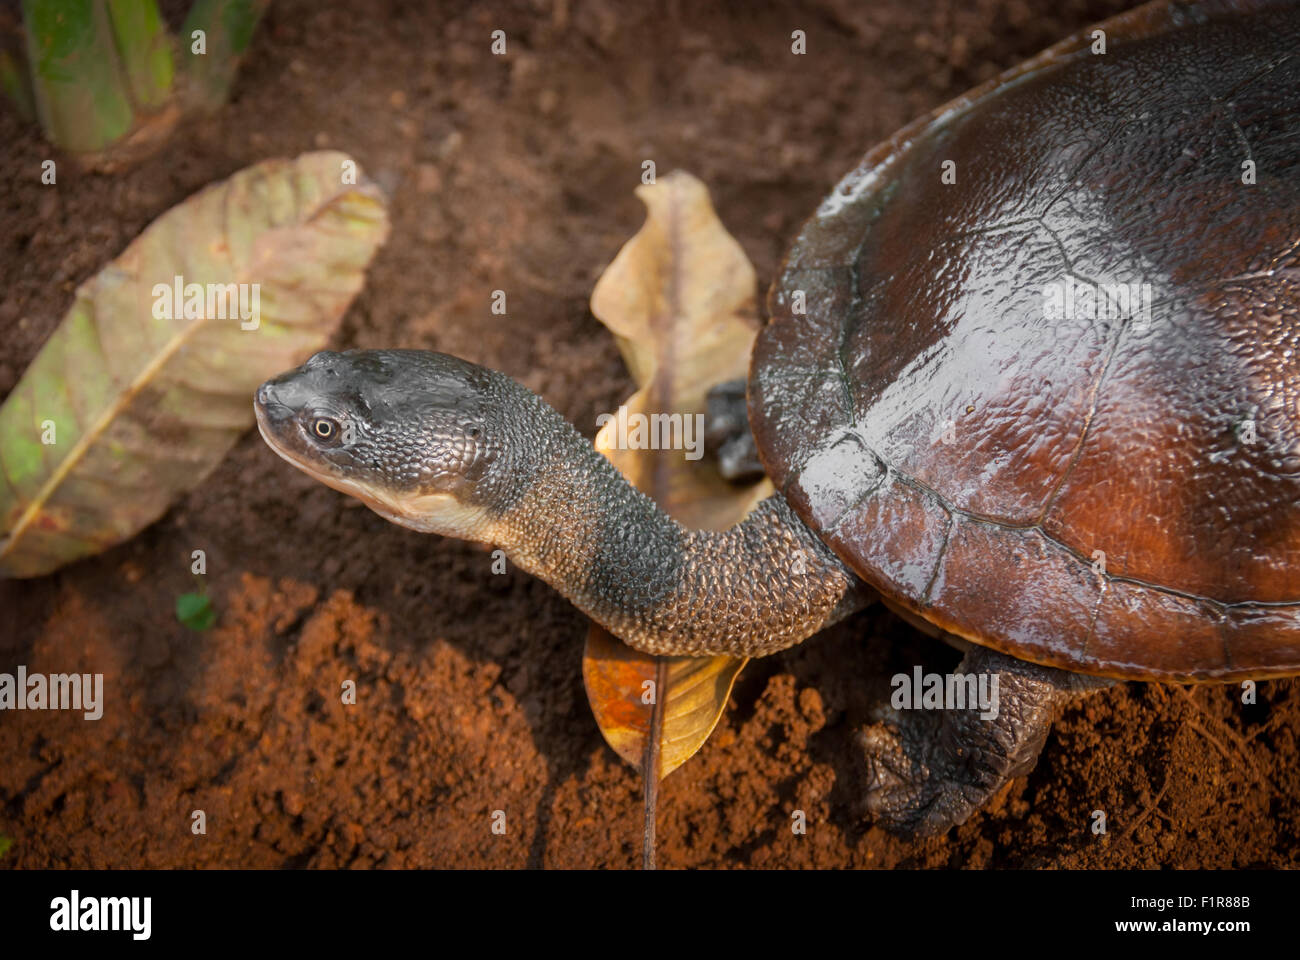 La tortue mouchetée de l'île de Rote (Chelodina mccordi) presque éteinte dans un site de reproduction ex situ autorisé à Jakarta, en Indonésie. Banque D'Images